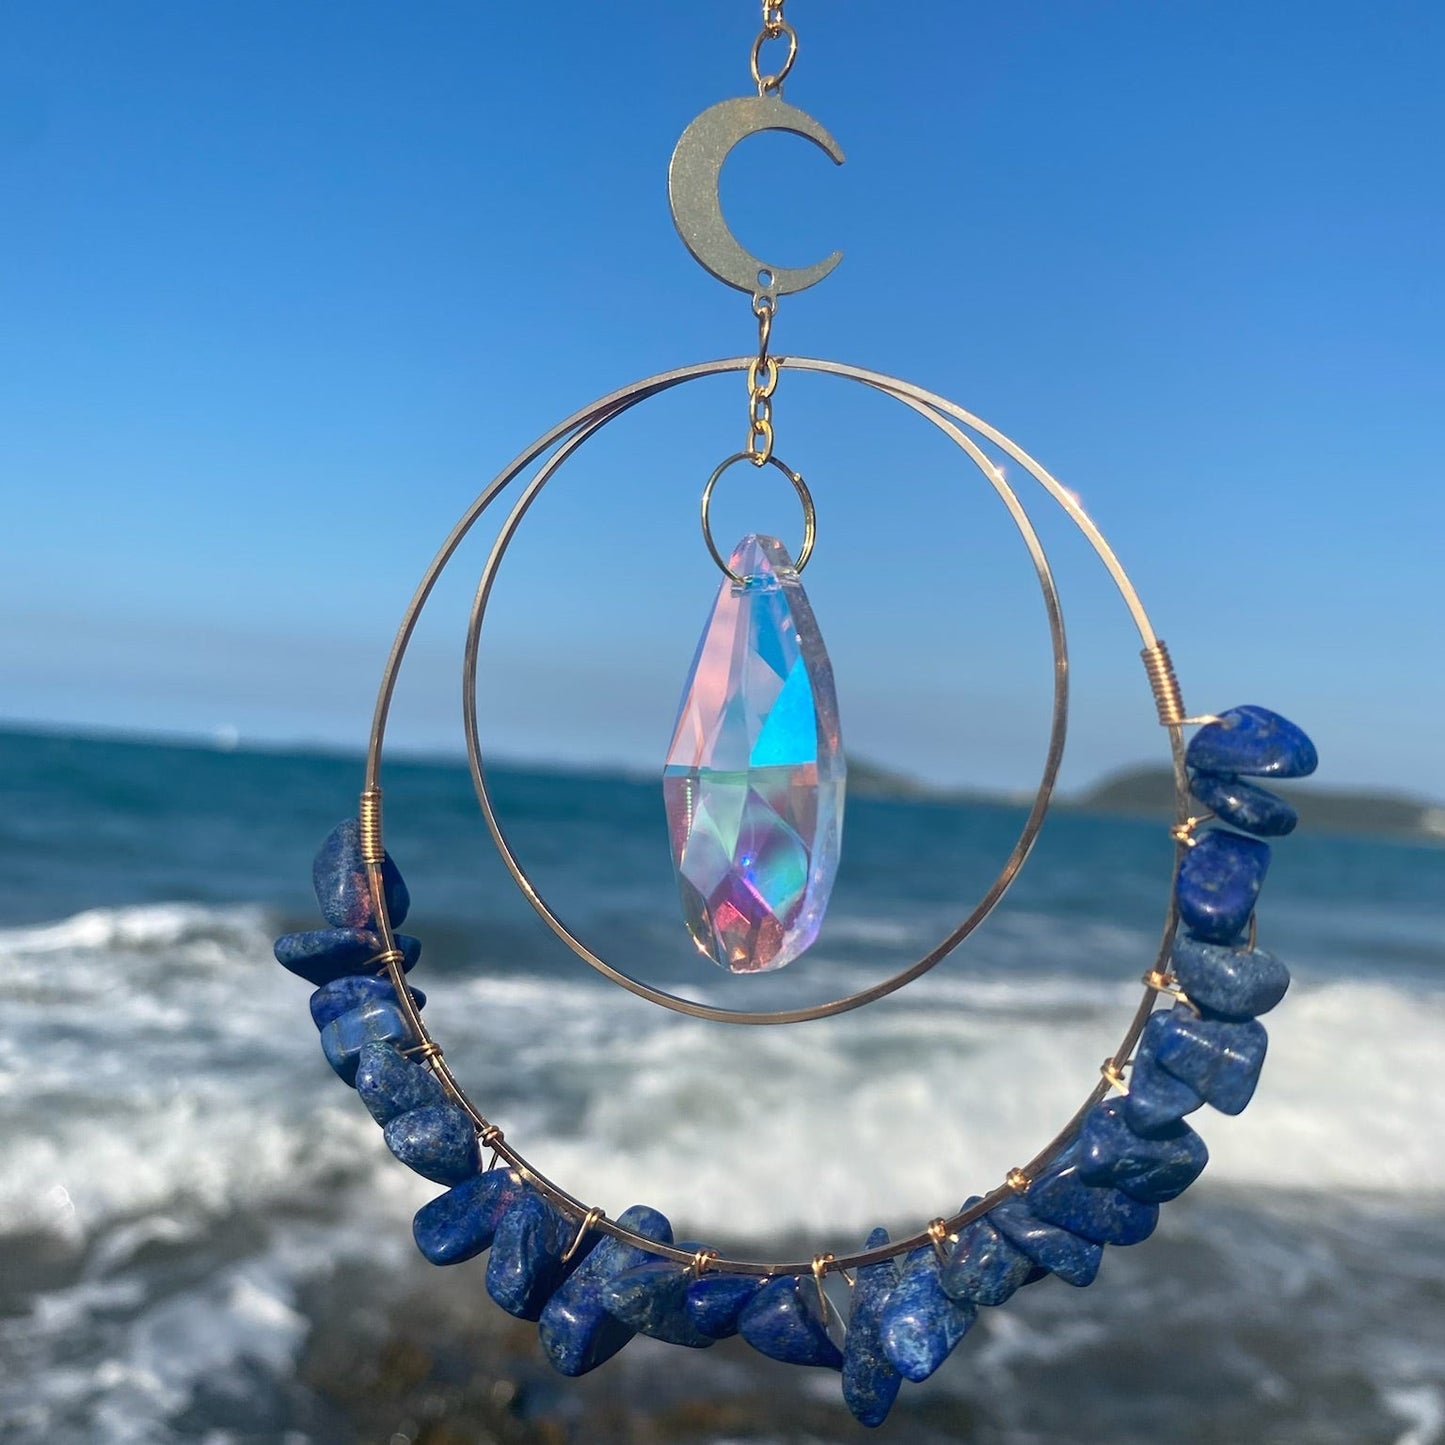 Lapis Lazuli hanging quartz crystal suncatcher in sunlight 